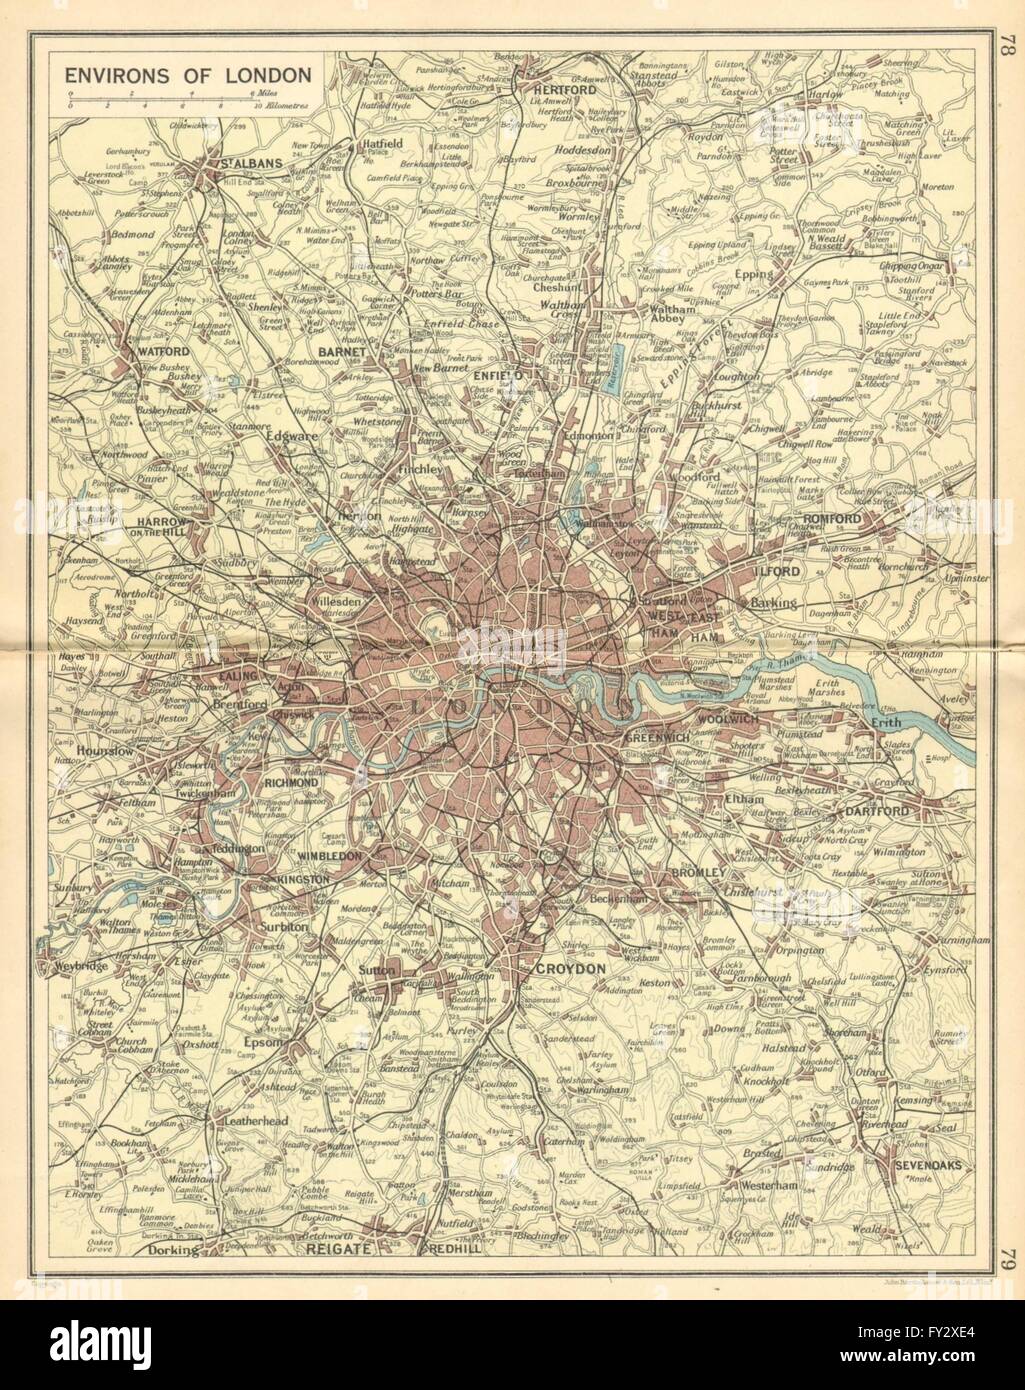 Londres y condados: ferrocarriles y carreteras. Bartolomé, 1925 vintage mapa Foto de stock